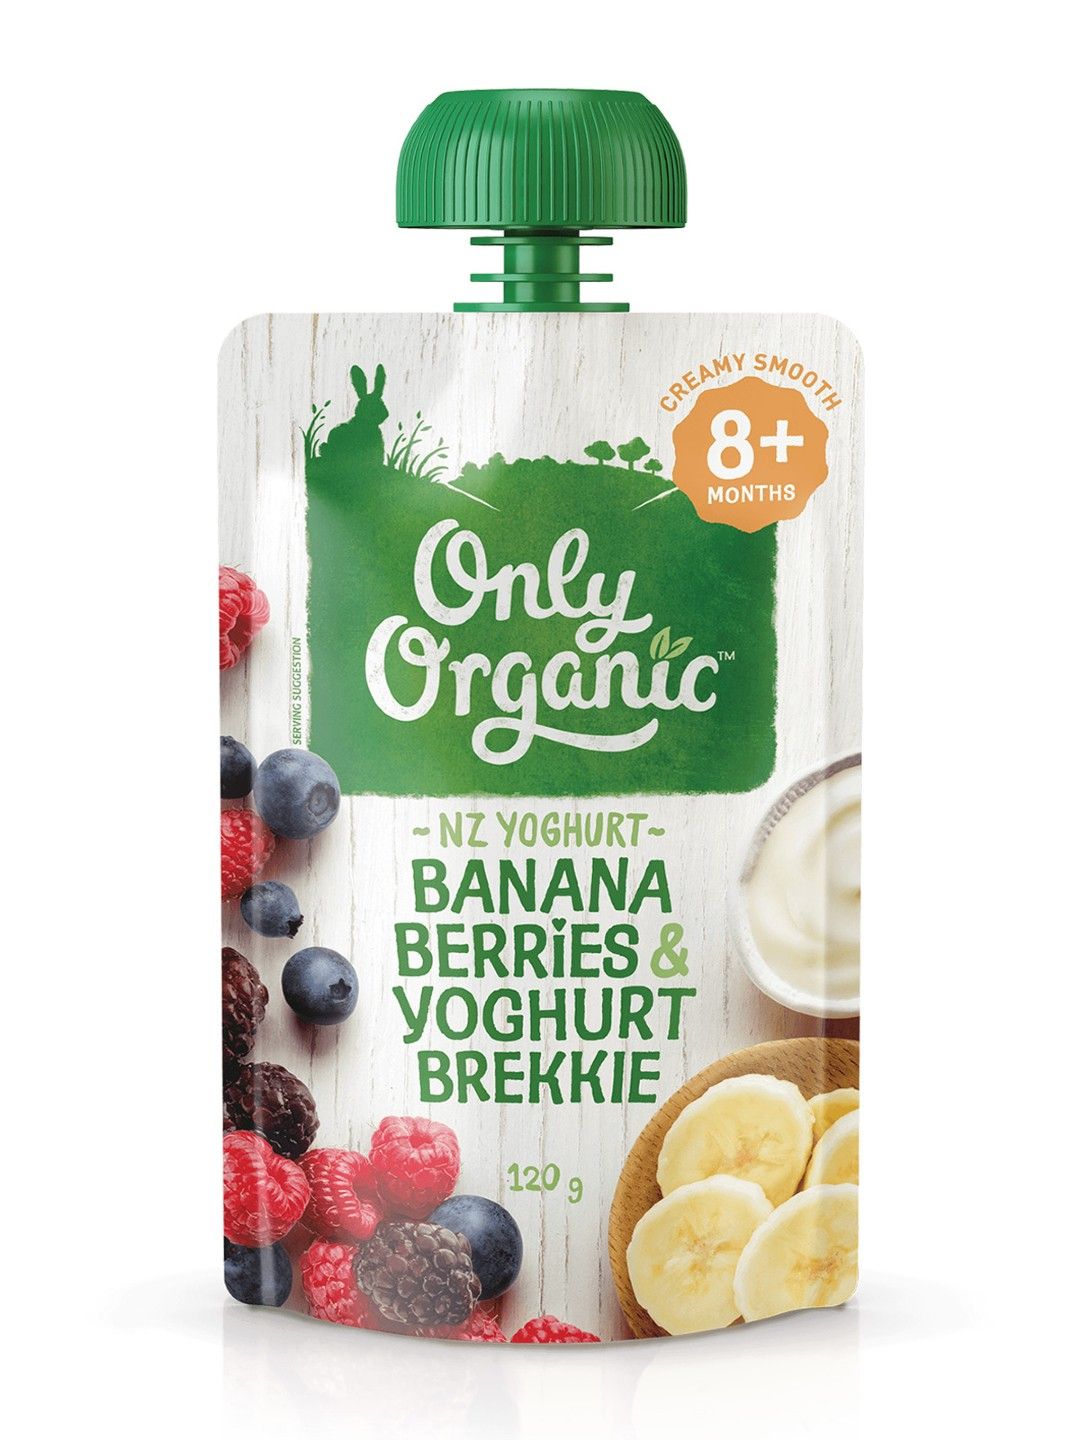 Only Organic Banana Berries & Yoghurt Brekkie (120g)